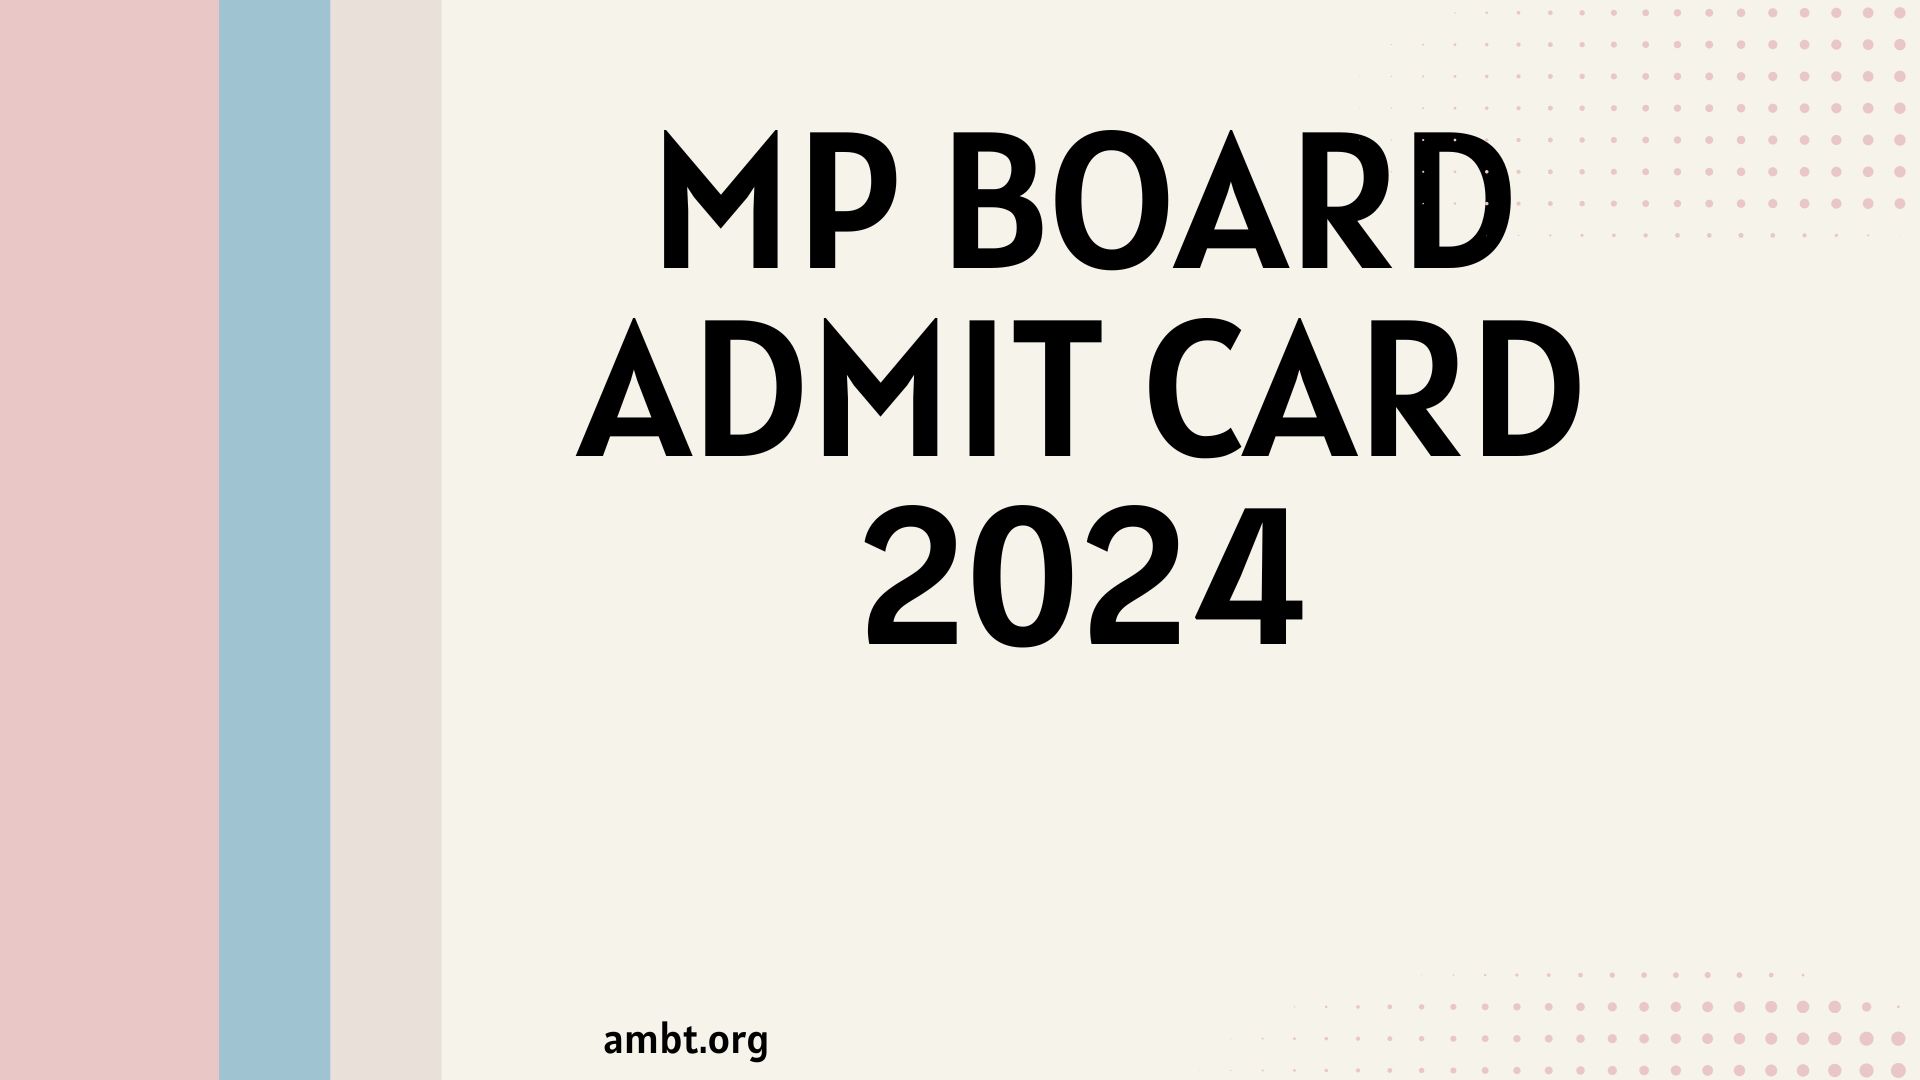 MP Board Admit Card 2024